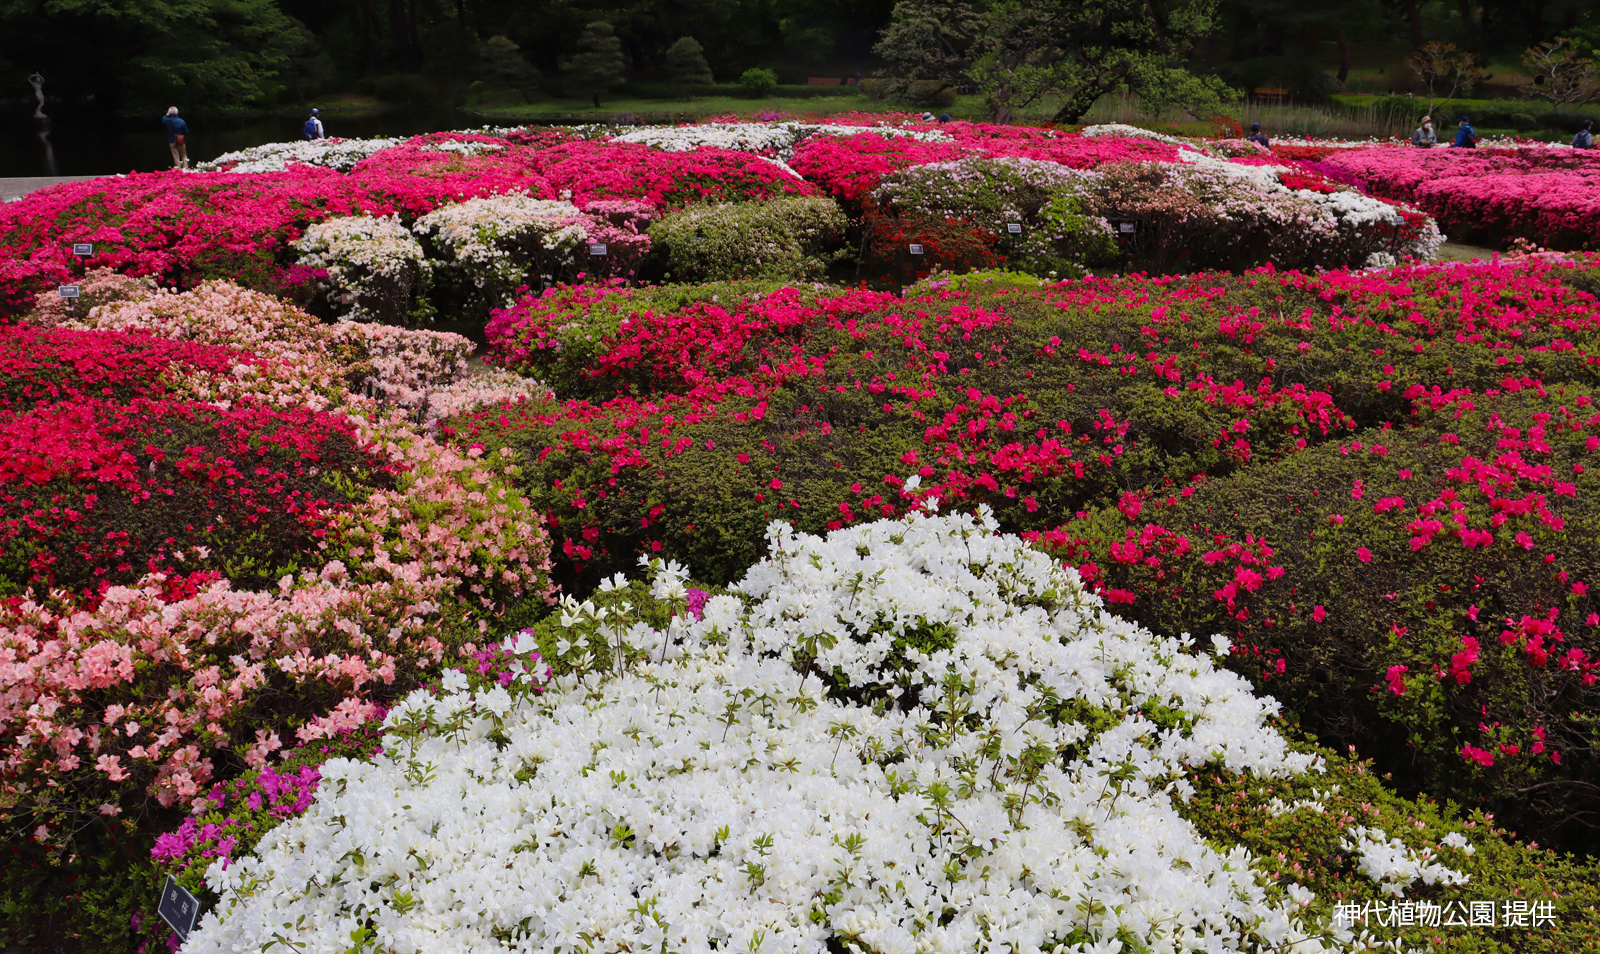 Jindai Botanical Gardens,